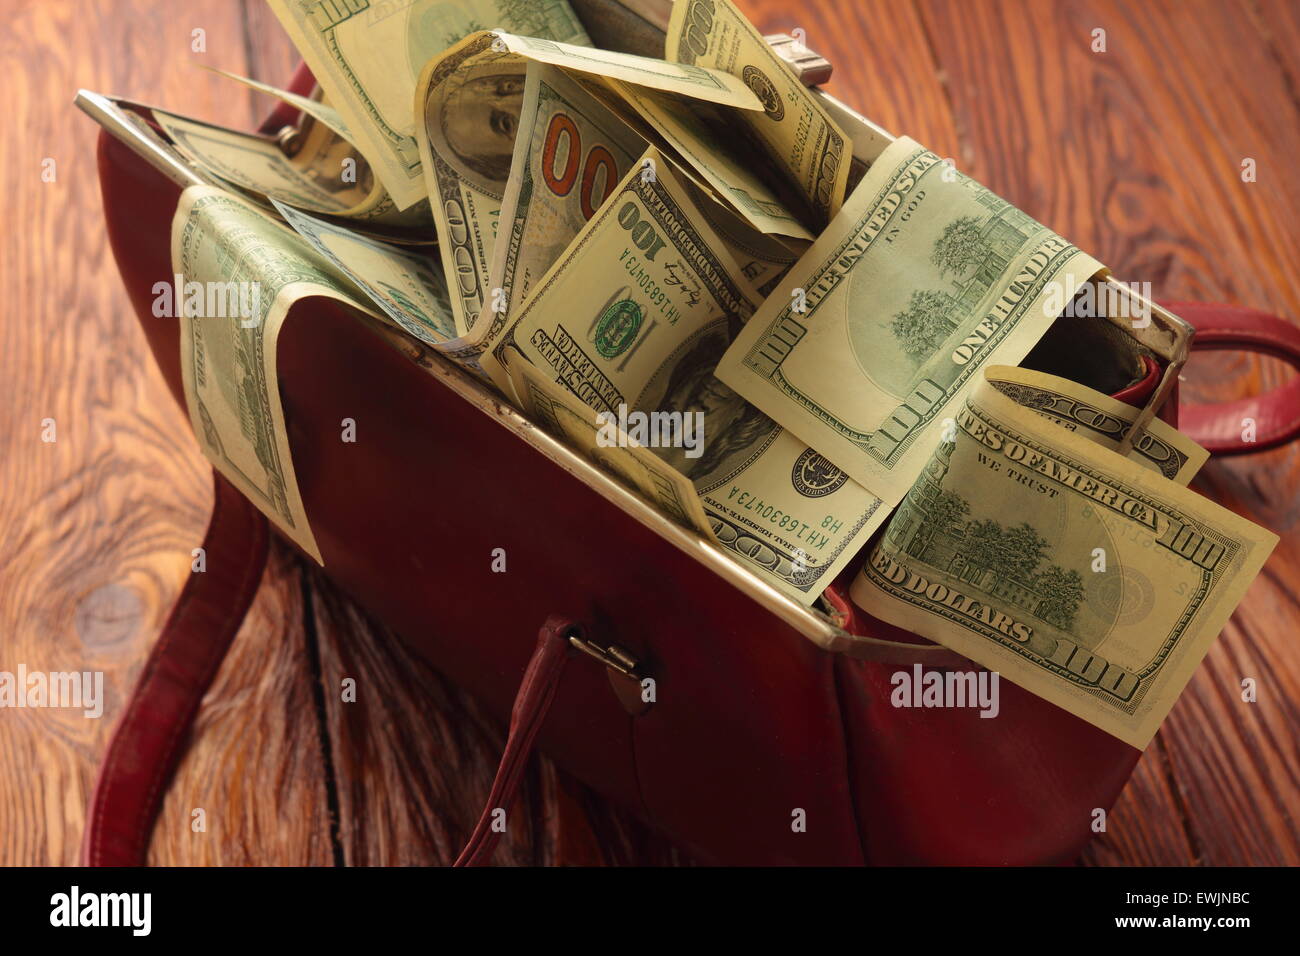 Borsa piena di soldi immagini e fotografie stock ad alta risoluzione - Alamy